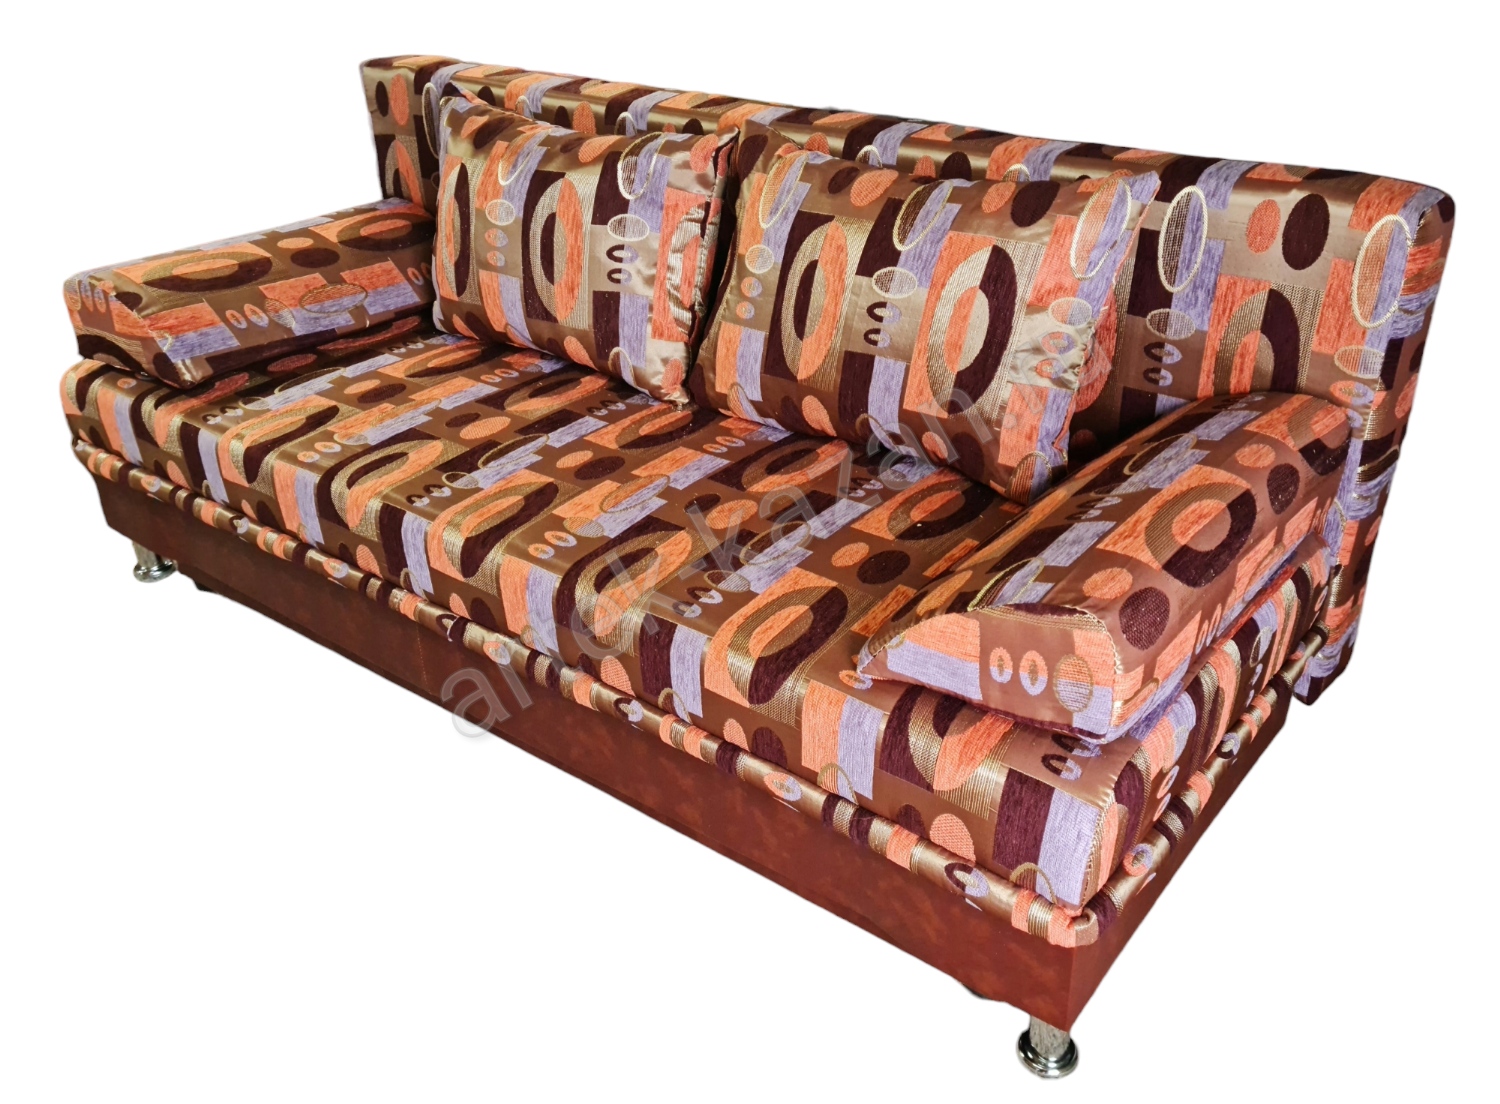 Фото 2. Купить недорогой диван по низкой цене от производителя можно у нас.